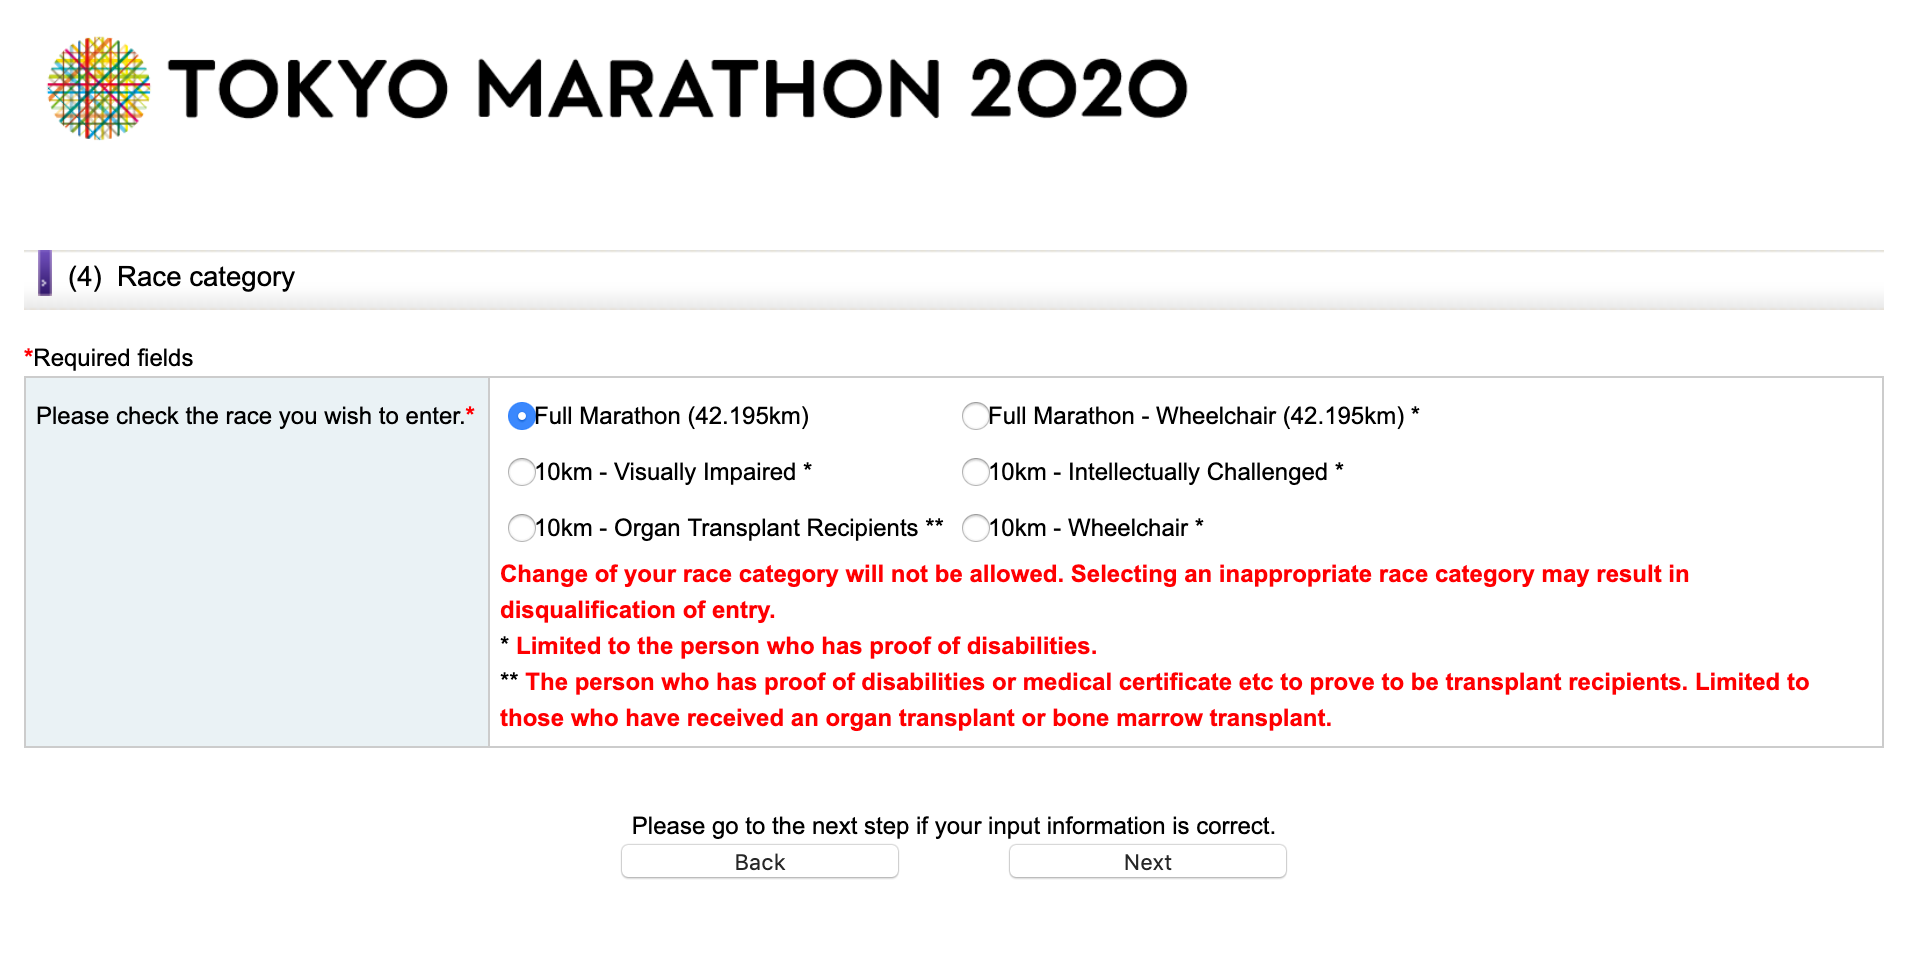 Hướng dẫn đăng ký xổ số dành suất tham gia Tokyo Marathon 2020 - dang ky tokyo marathon 2020 6